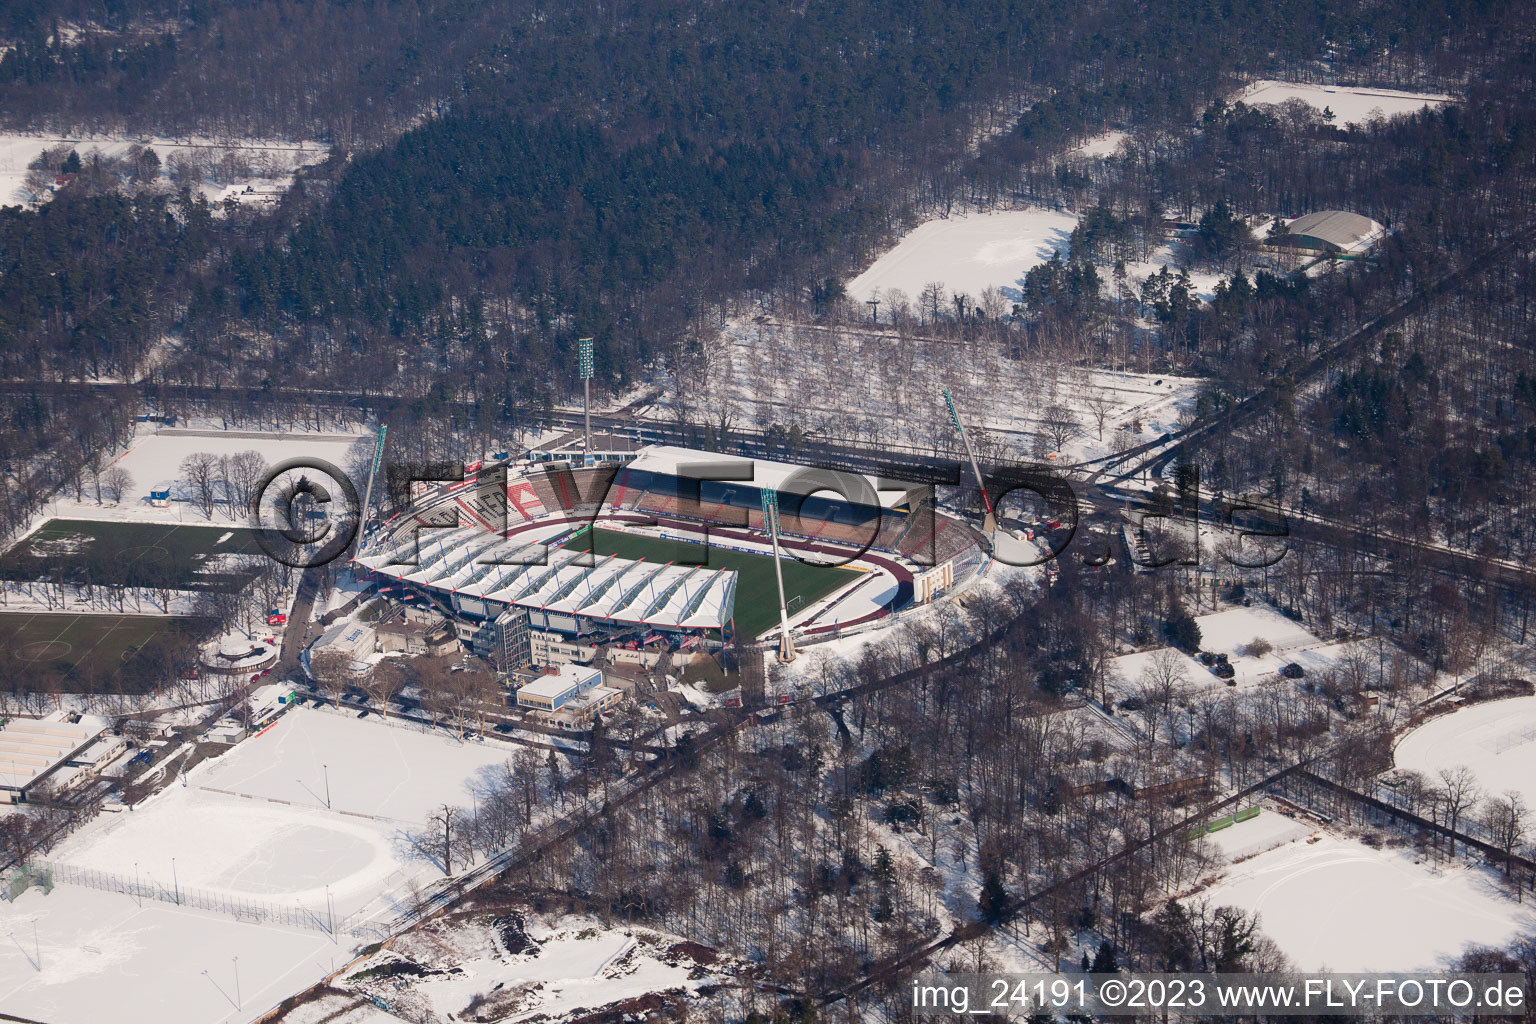 Luftbild von Wildparkstadion KSC im Ortsteil Innenstadt-Ost in Karlsruhe im Bundesland Baden-Württemberg, Deutschland